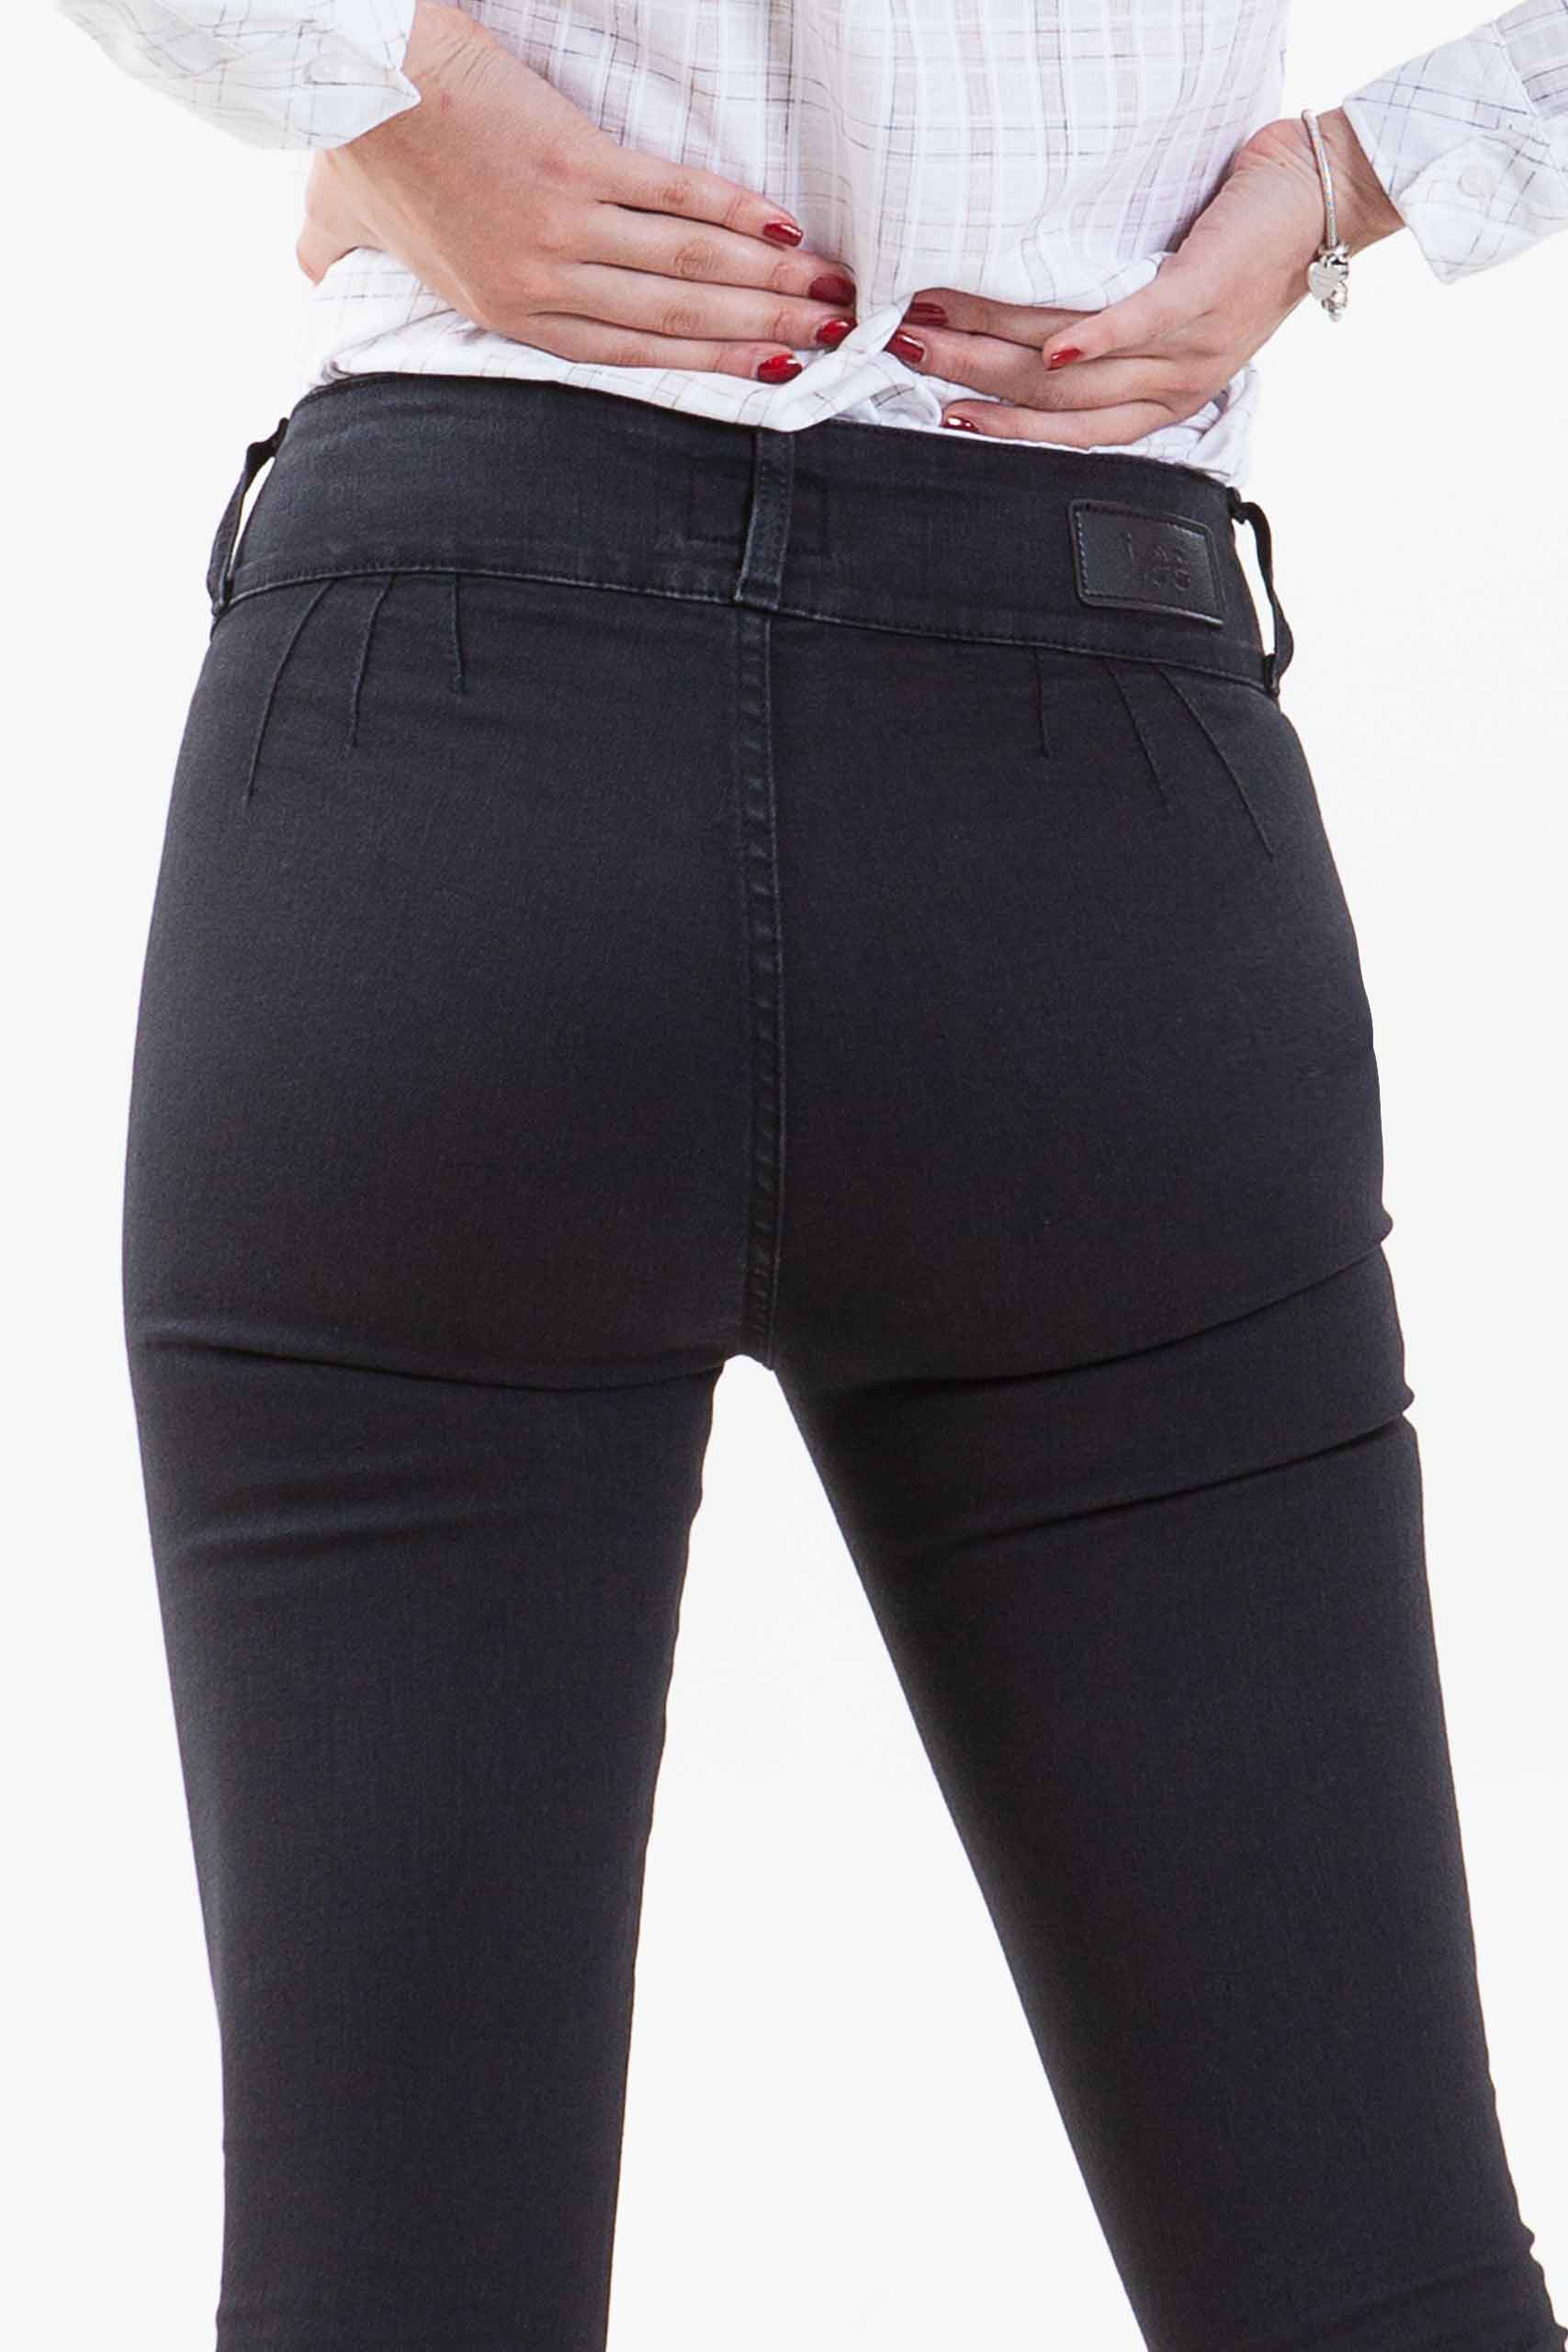 Vista posterior de jean de color negro de estilo cropp de pierna ajustada de marca lee